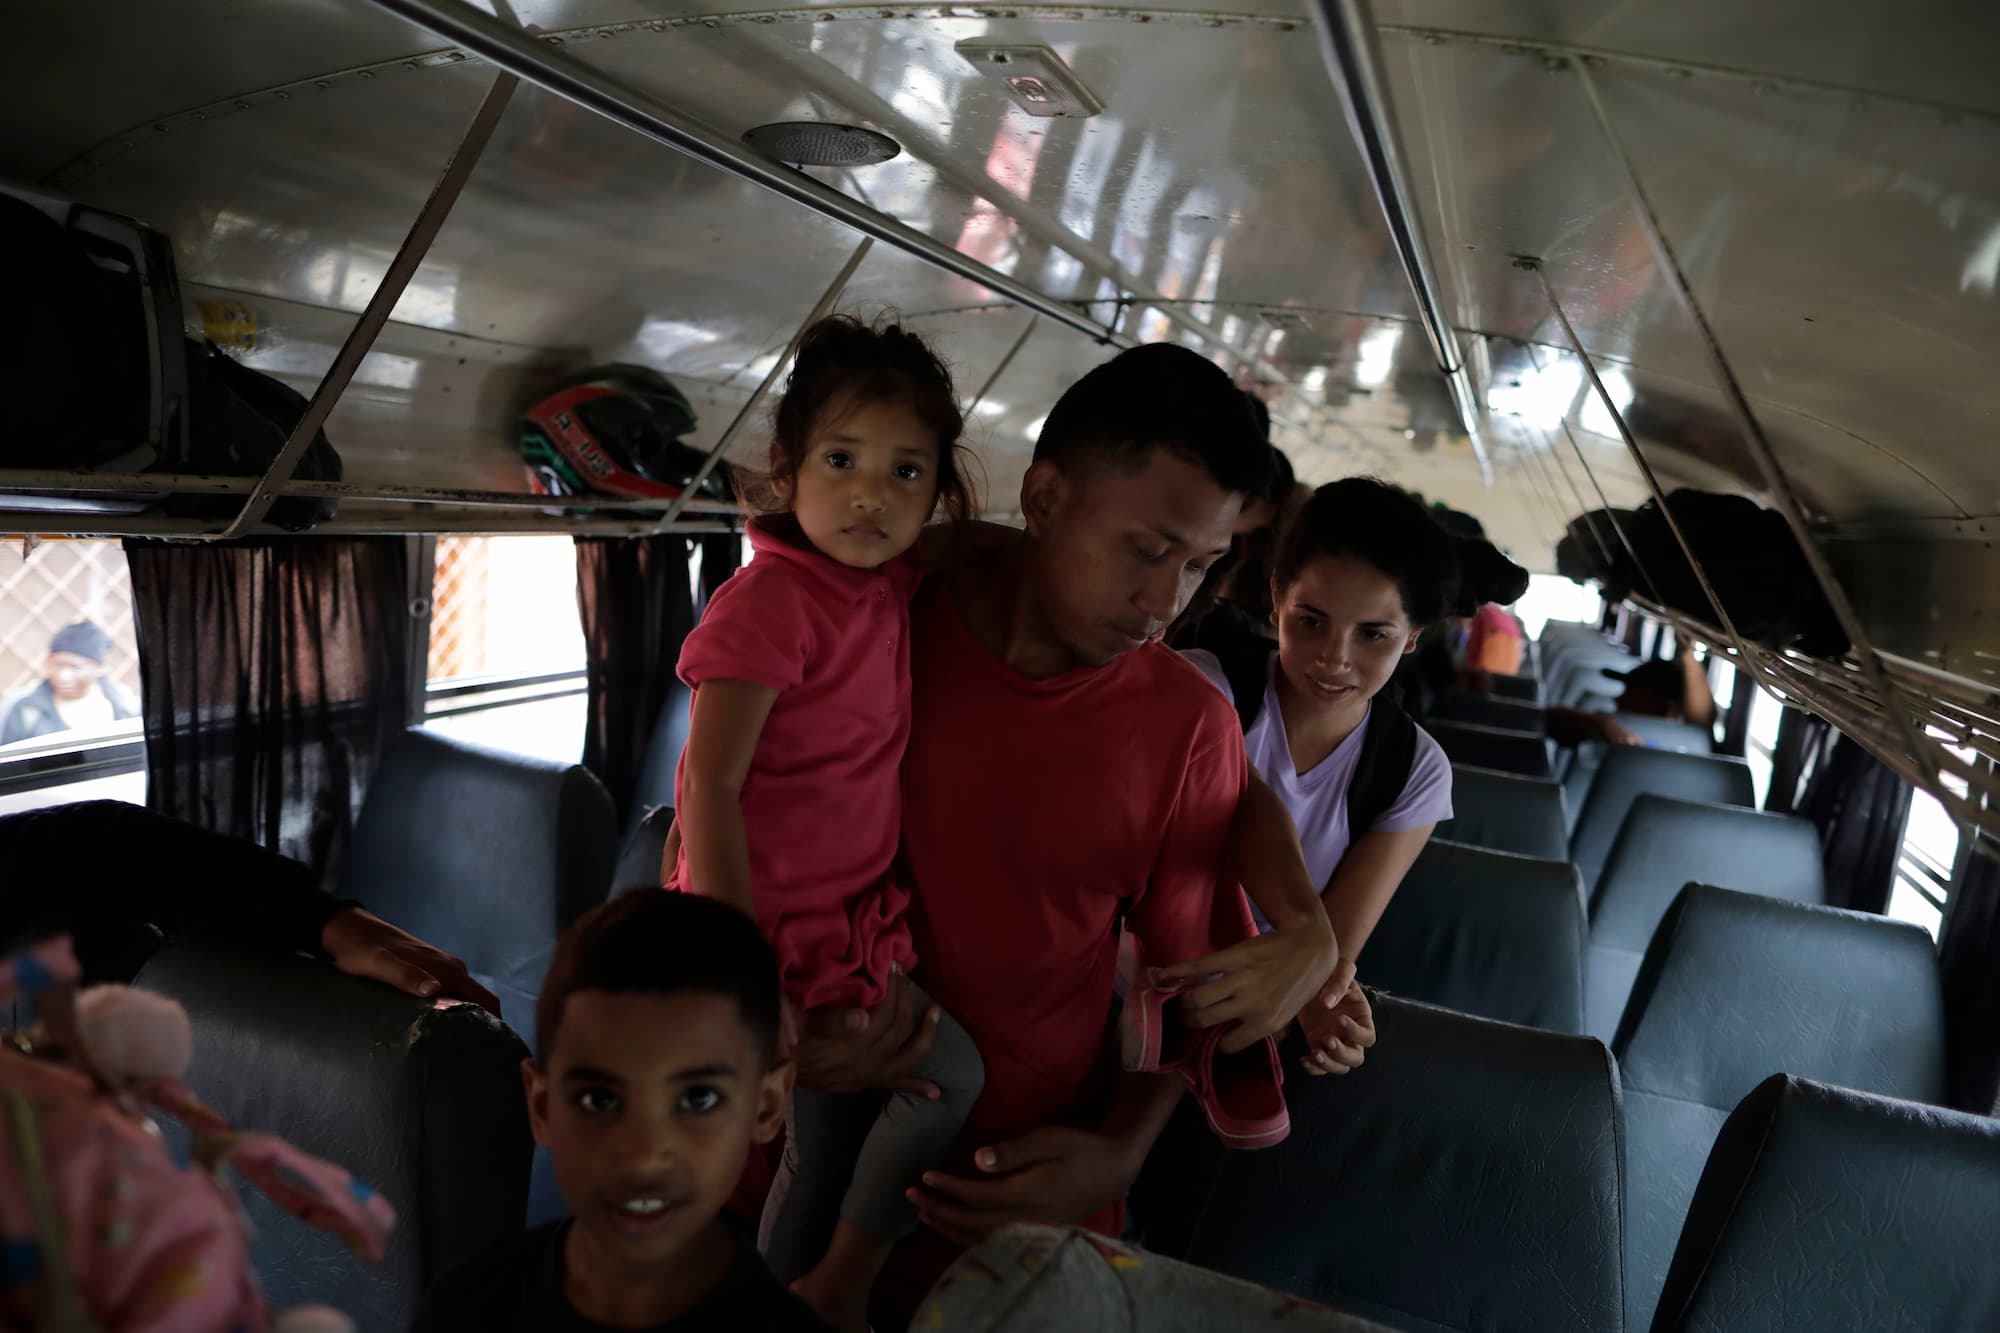 Migrantes bajan de buses que los trasladan a las fronteras para intentar llegar a los Estados Unidos. Foto CC/Jorge Cabrera